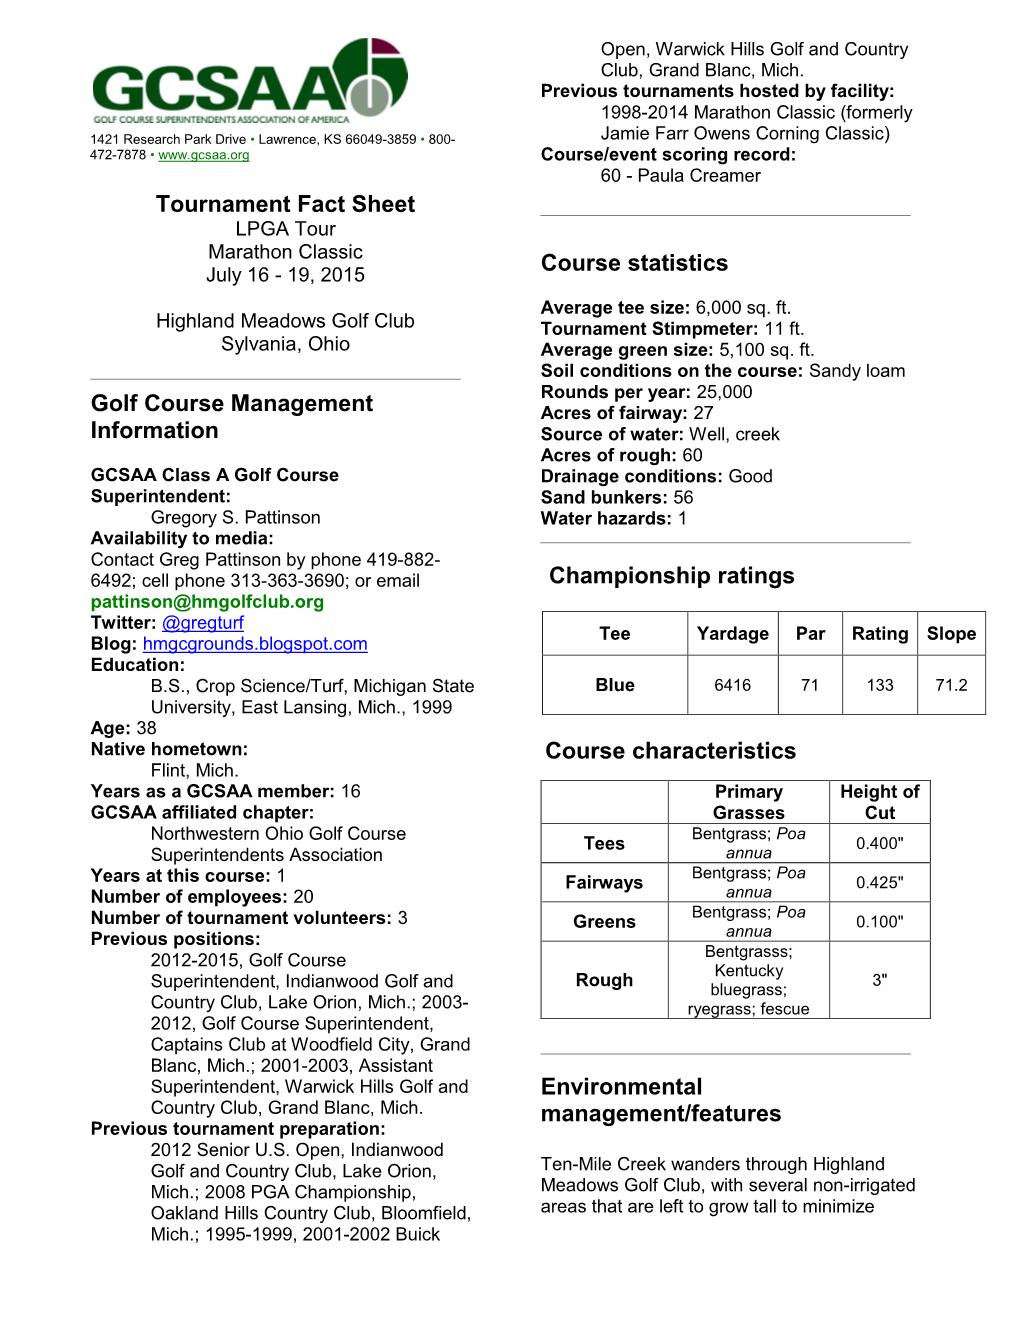 Tournament Fact Sheet Golf Course Management Information